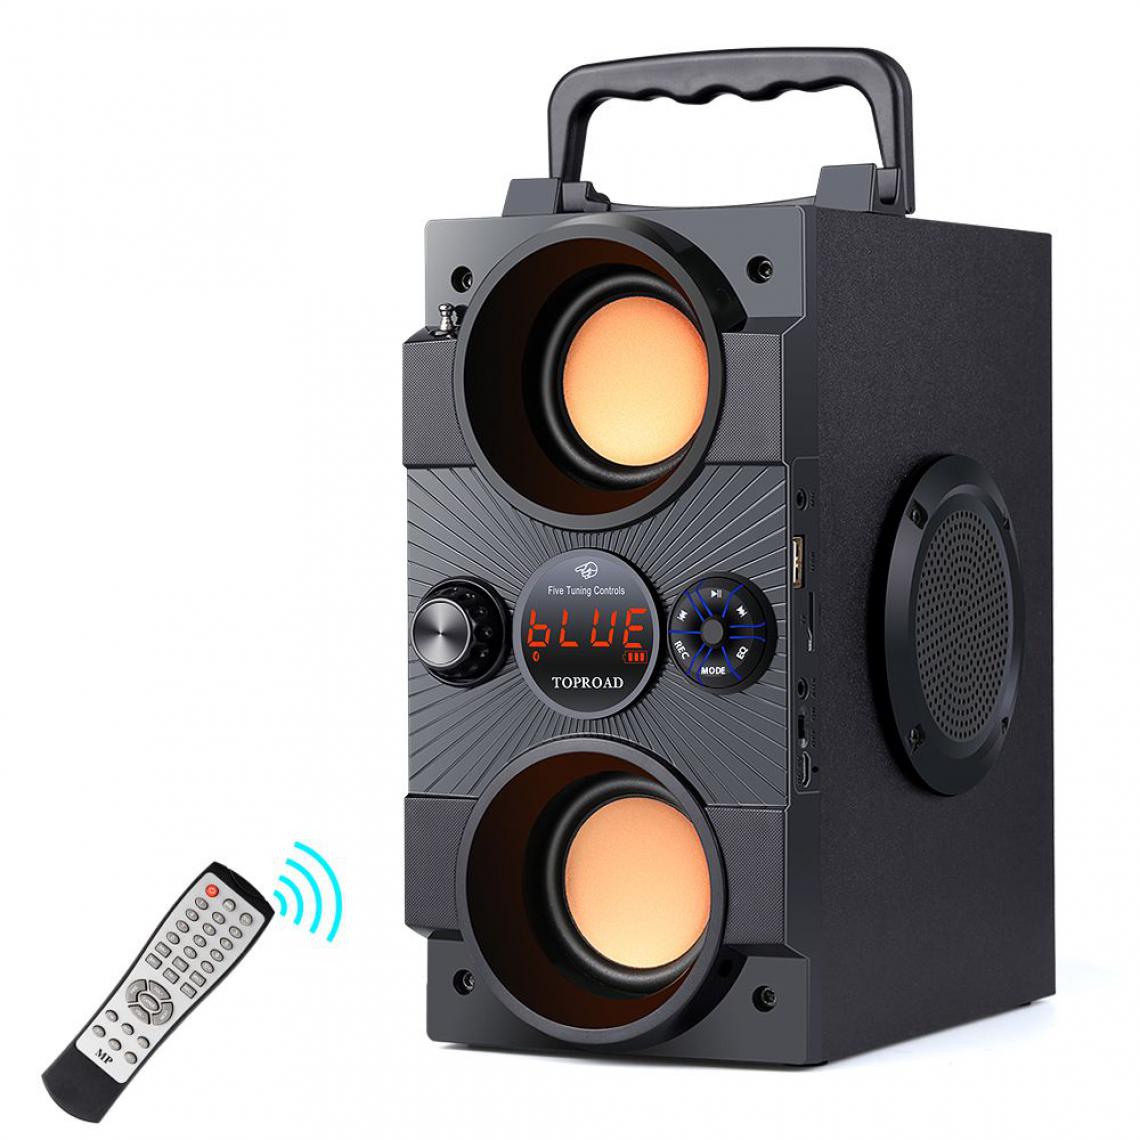 Generic - Haut-parleur Bluetooth Portable TOPROAD , sans fil  avec caisson de basses et FM micro AUX USB ,Compatible avec Android, iPhone et Ordinateurs Portable  22.5 * 18.5 * 11.5 cm - Noir  - Enceinte PC